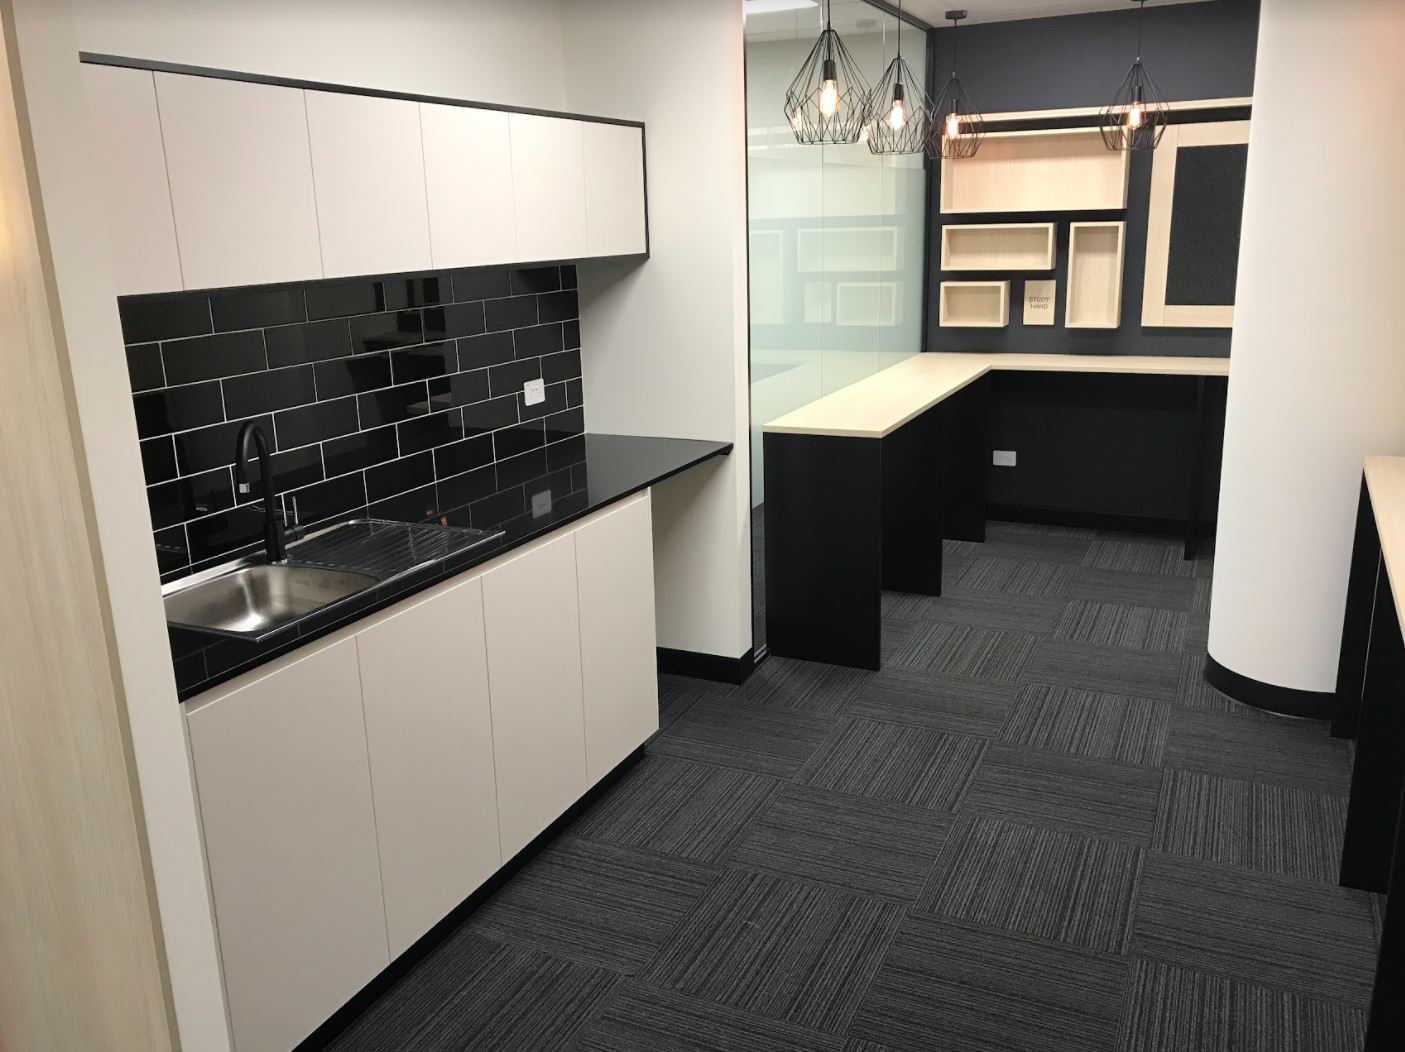 internal office kitchen design